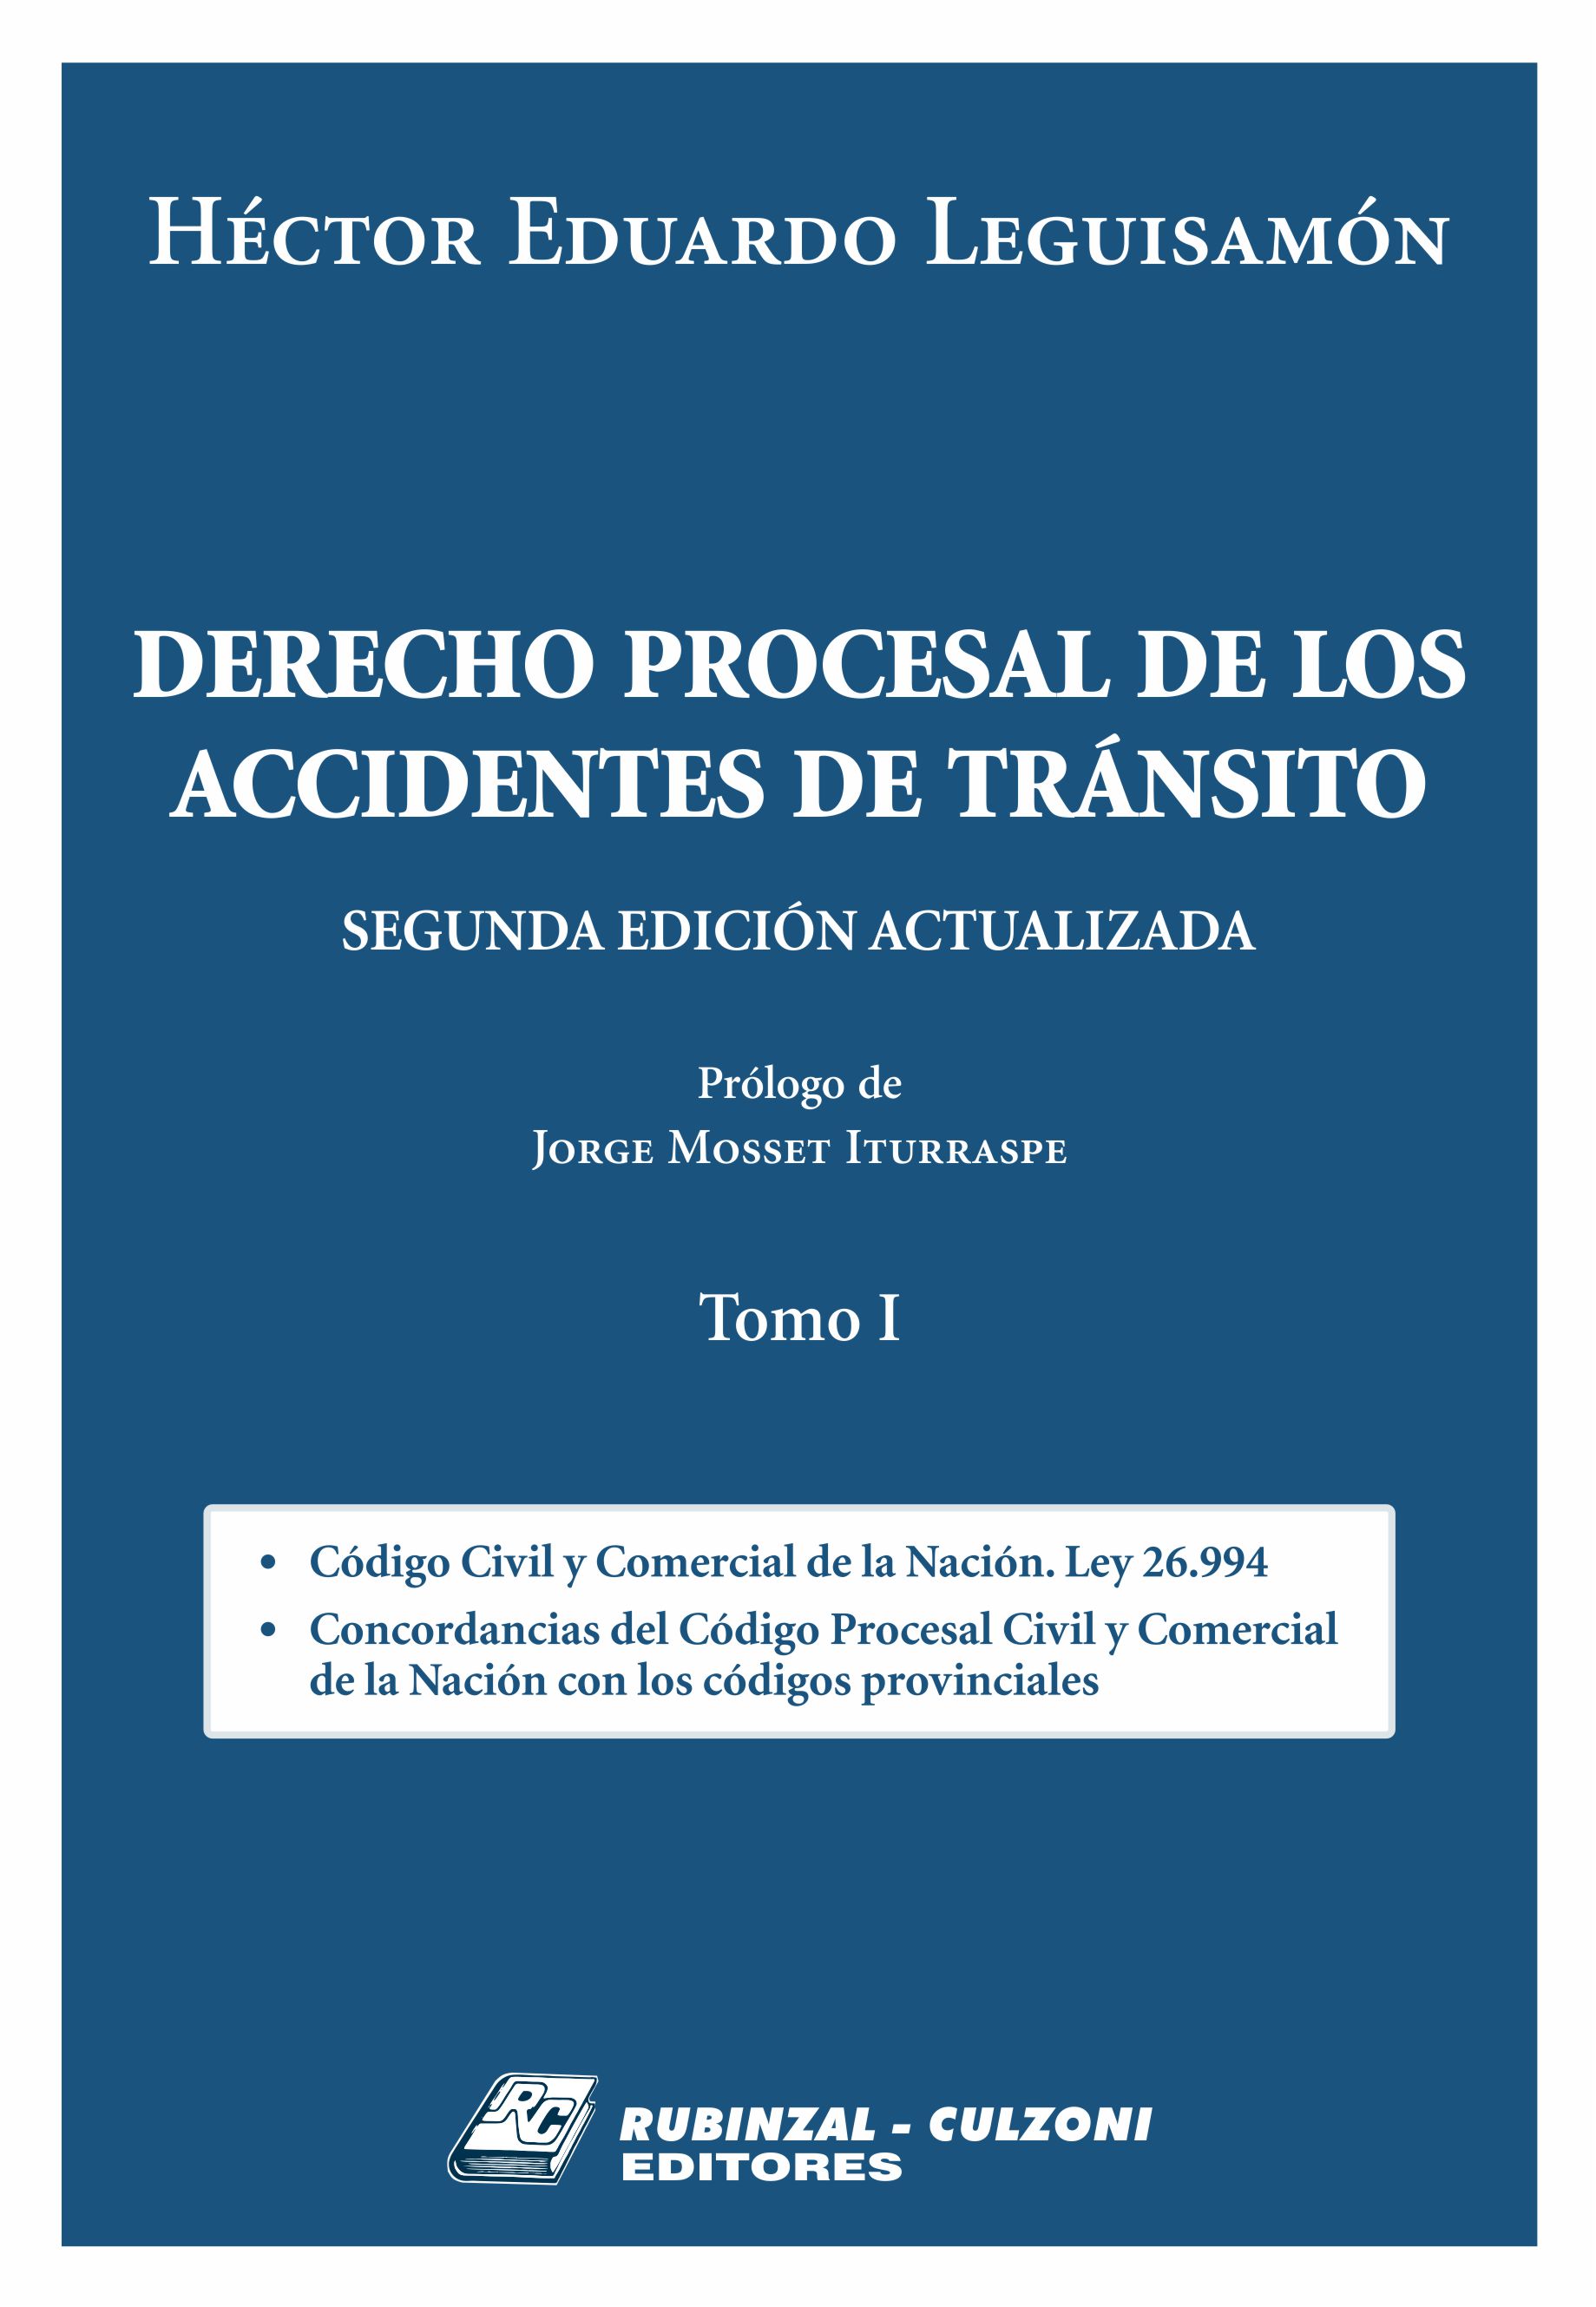 Derecho Procesal de los Accidentes de Tránsito. 2ª Edición actualizada - Tomo I.